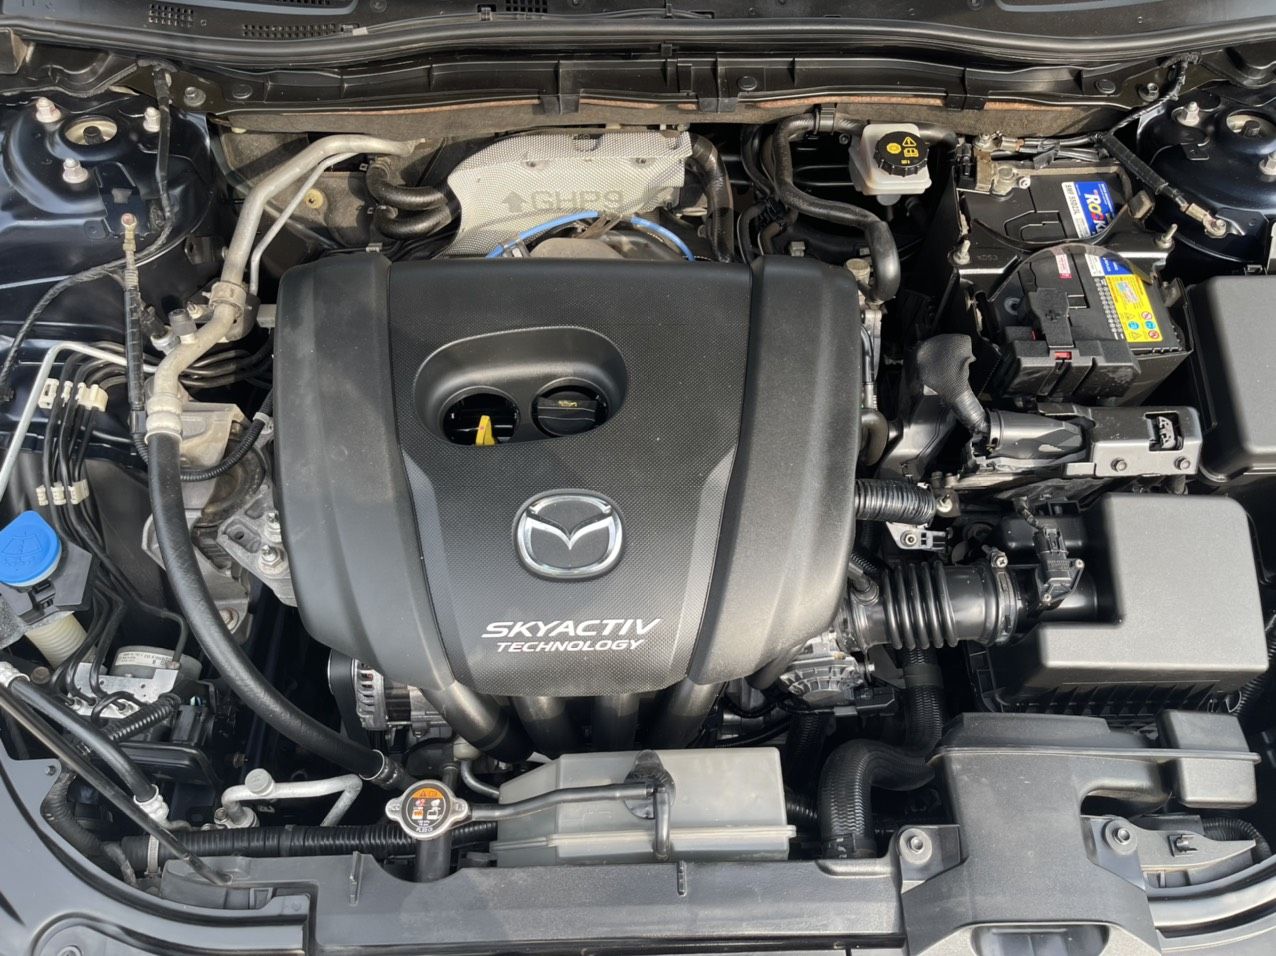 Mazda 3 2017 - 1 chủ từ mới lướt đúng 4v km xịn, màu xanh cavansite độc